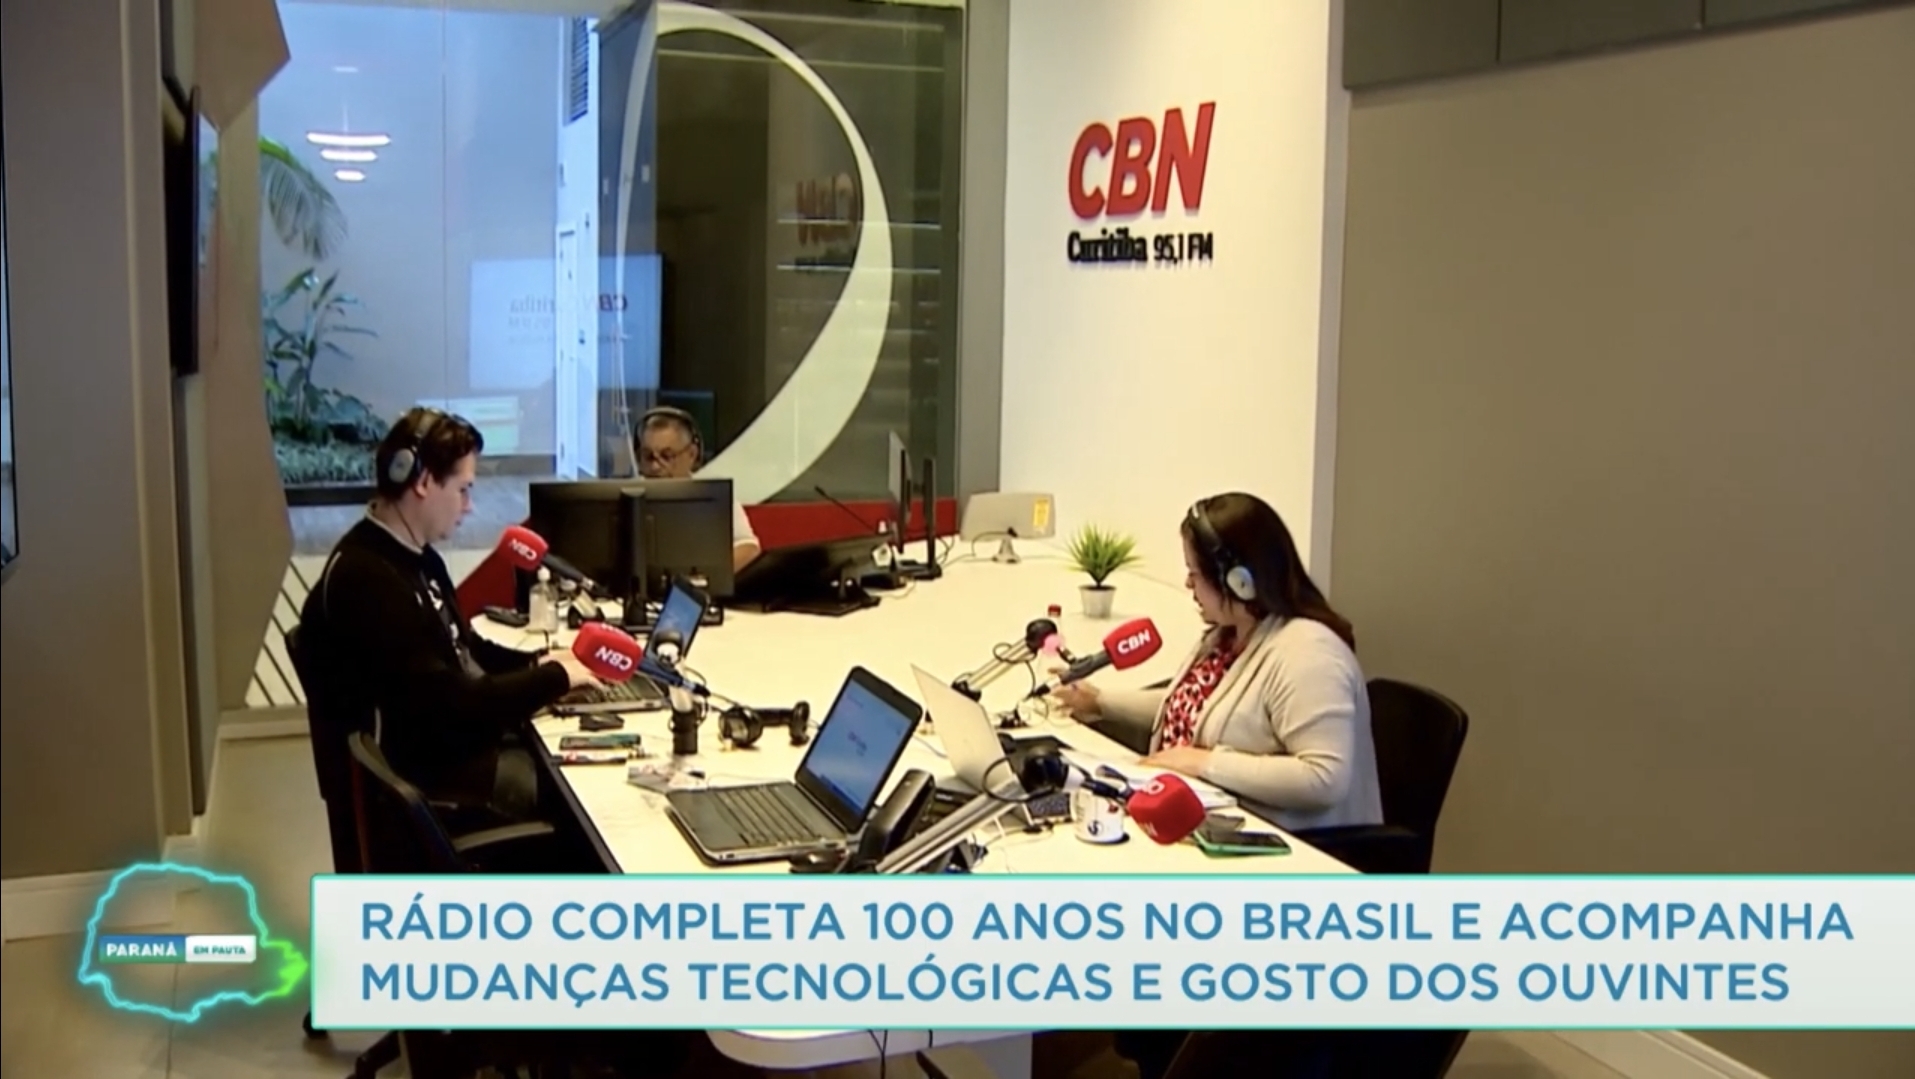 Cbn Curitiba Ilustra Reportagem Da Tv Educativa Do Paraná Sobre Os 100 Anos Do Rádio Cbn 4789